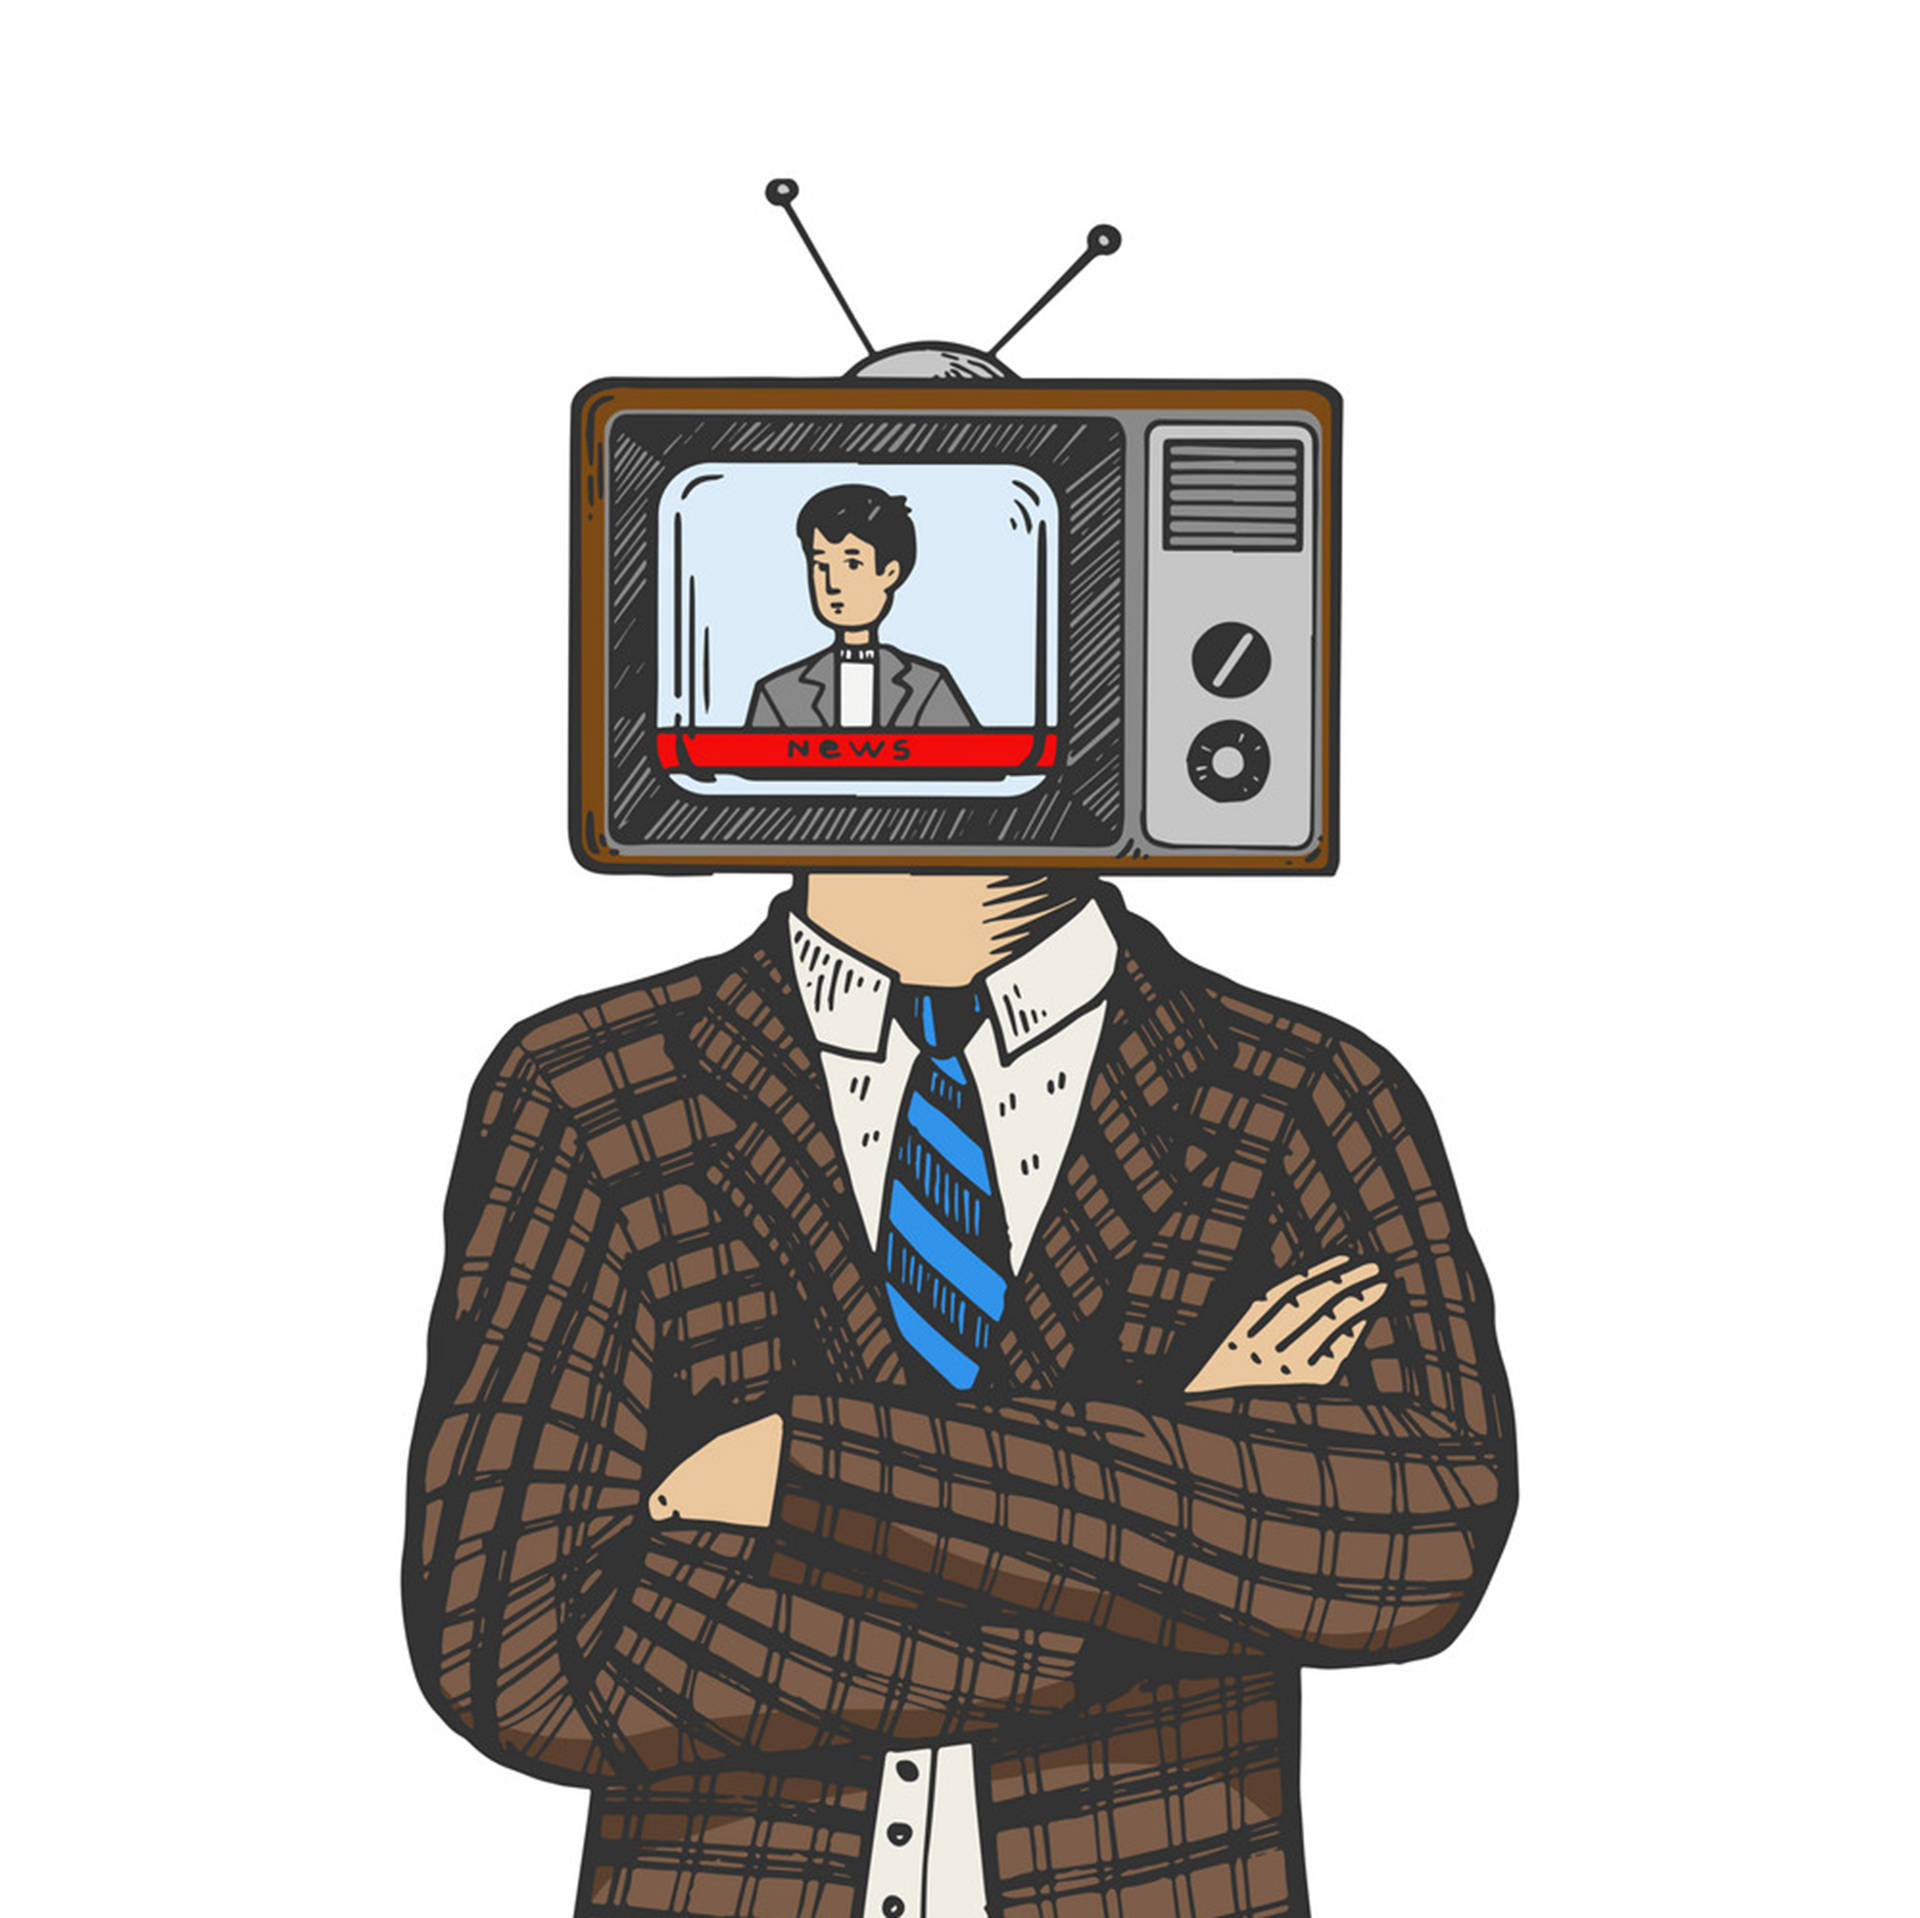 Картинка тв мене. Человек телевизор арт. Телевизор вместо головы. Человек с головой телевизора. Человек с телевизором вместо головы.